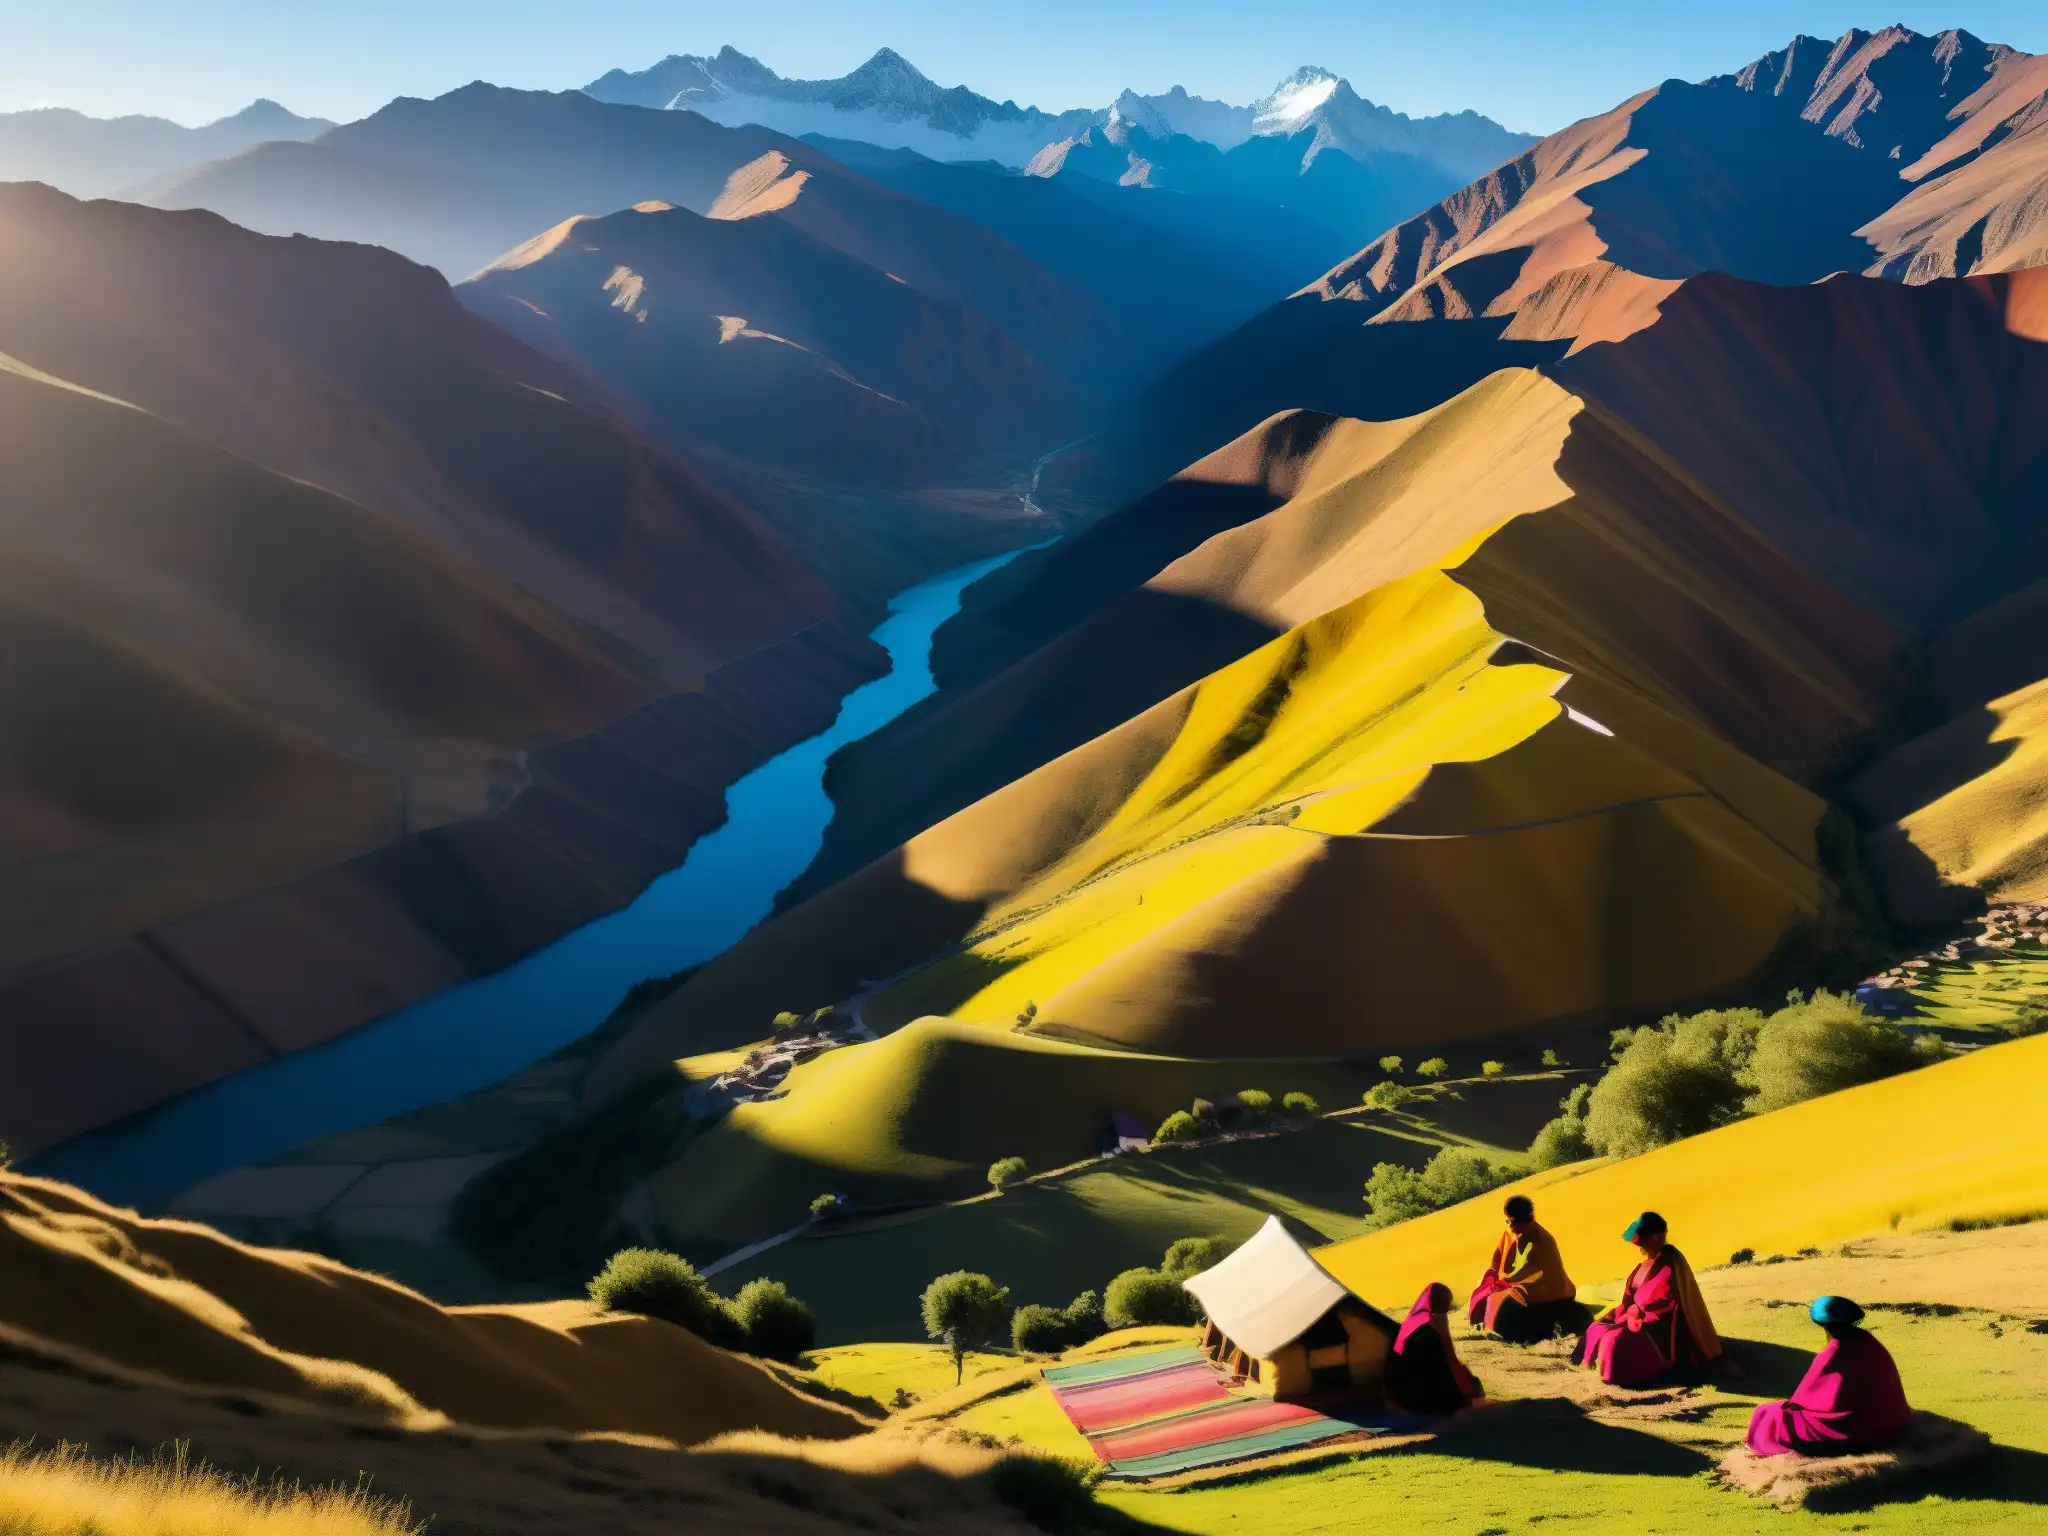 Vista del atardecer dorado sobre los Andes bolivianos con una aldea en el valle